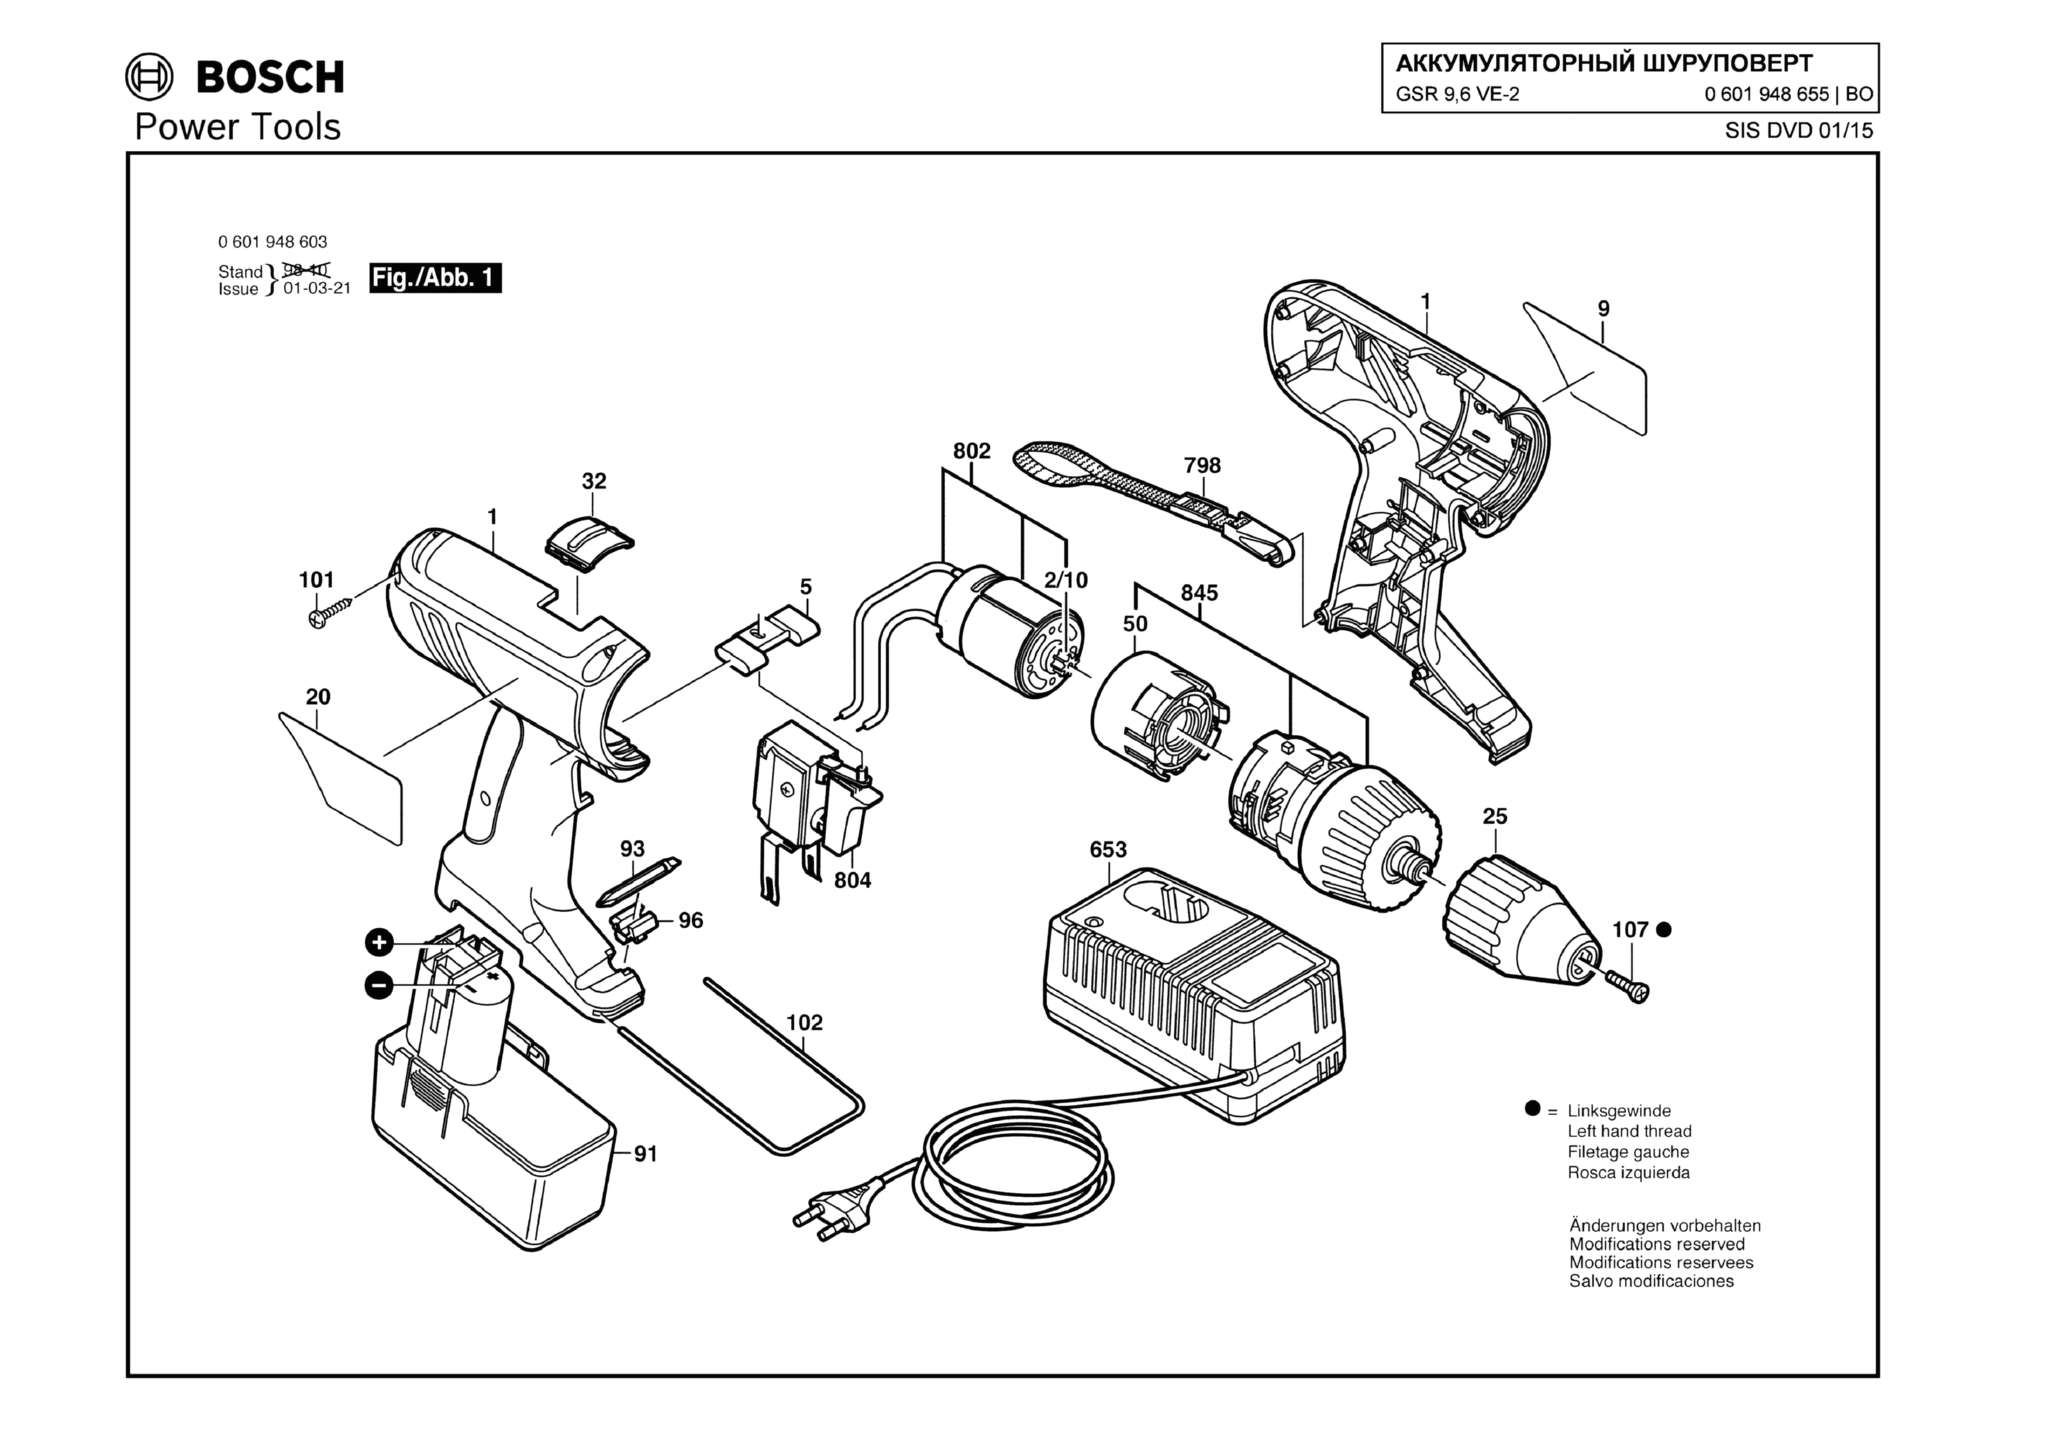 Запчасти, схема и деталировка Bosch GSR 9,6 VE-2 (ТИП 0601948655)